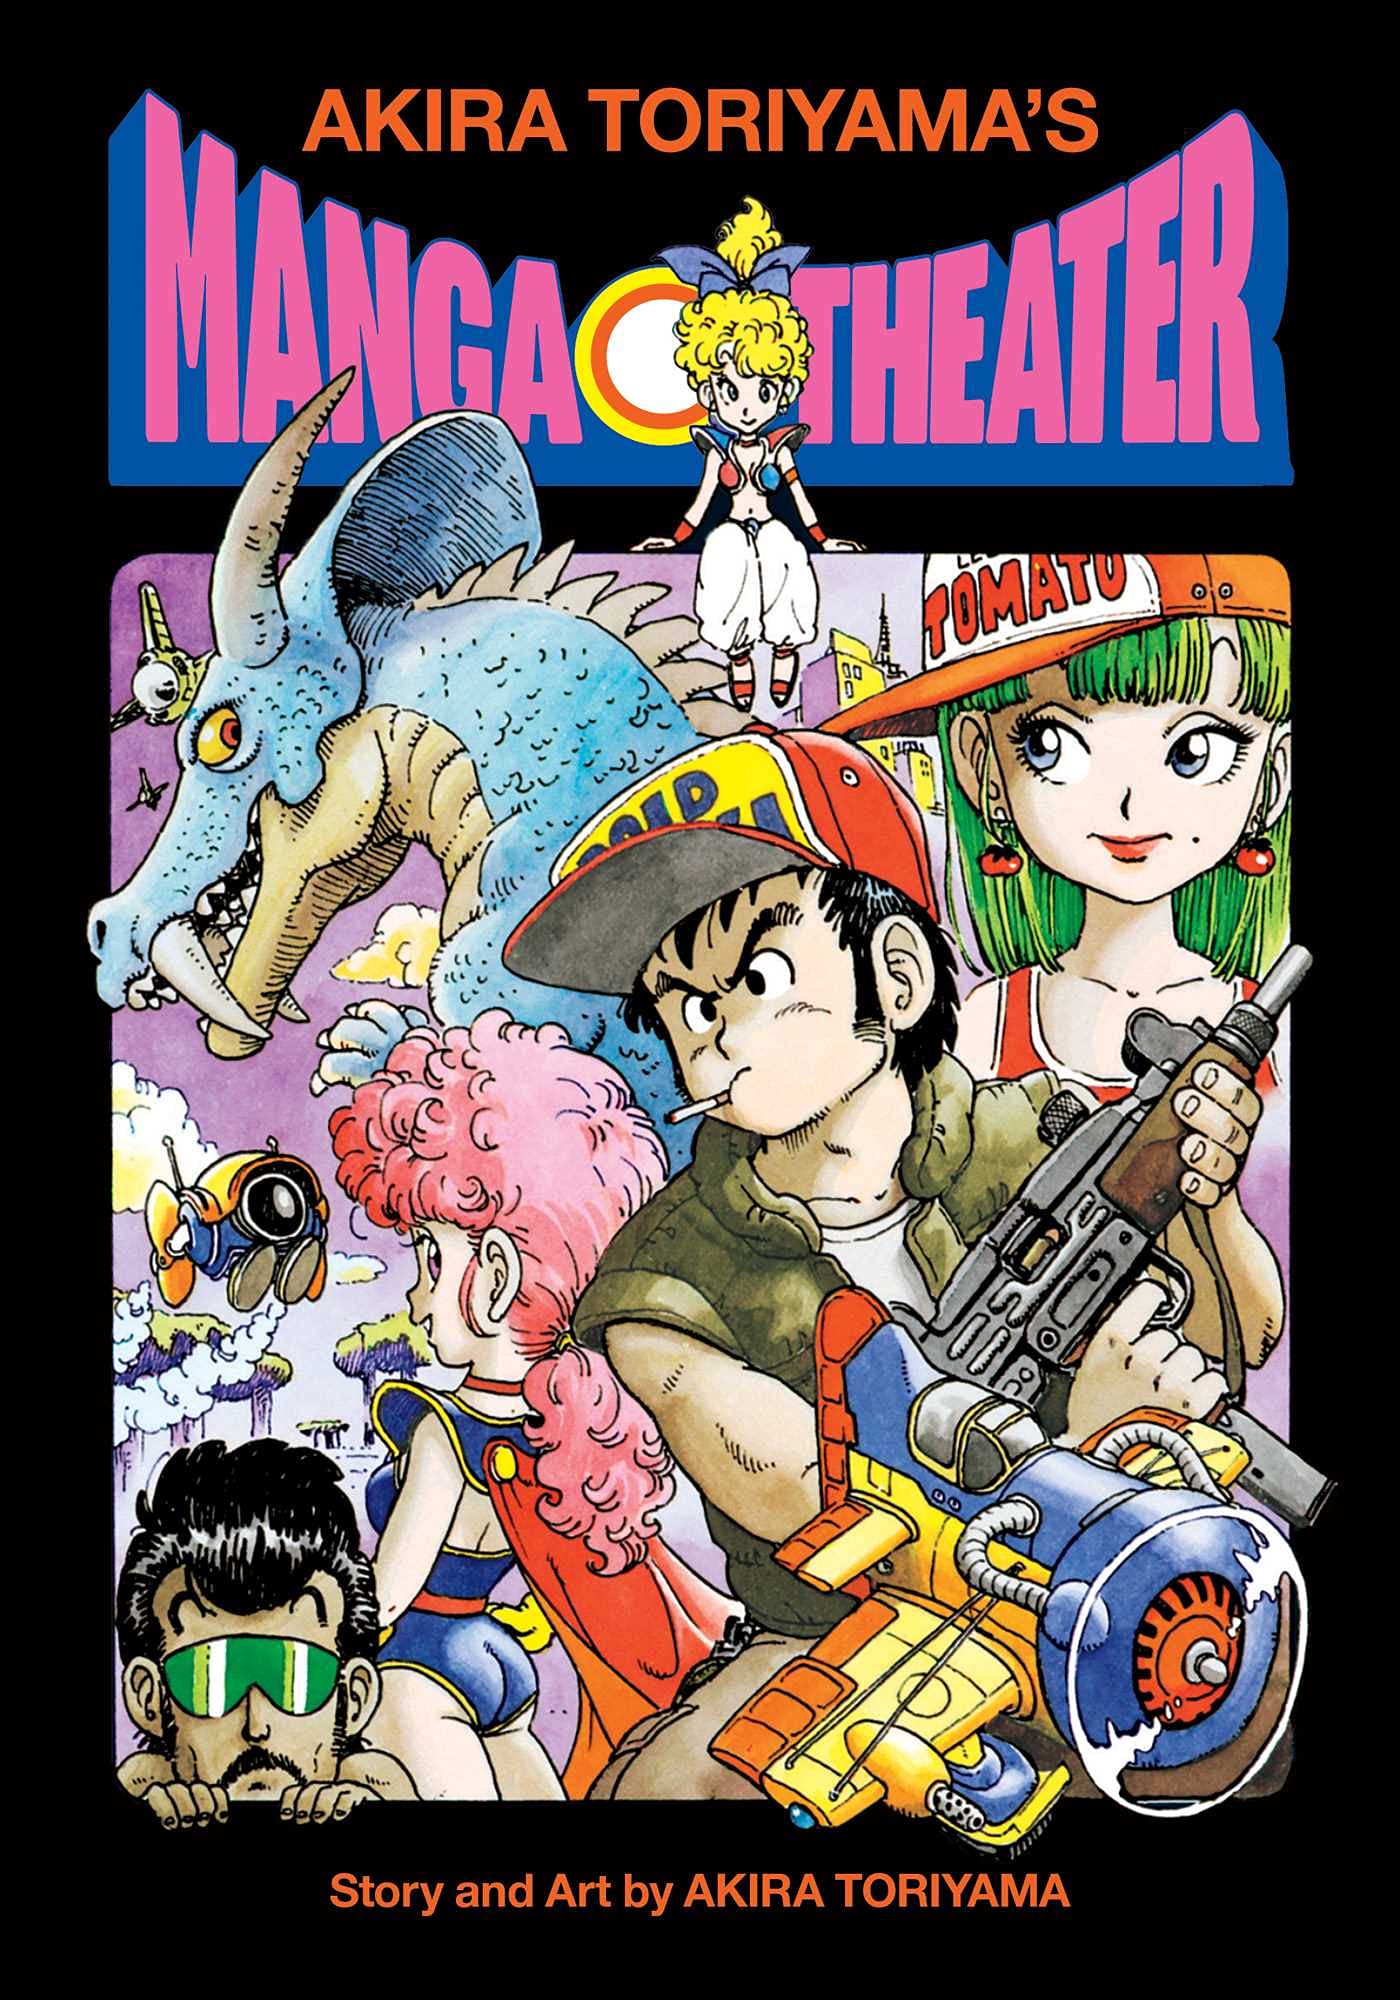 Akira Toriyama’s Manga Theater